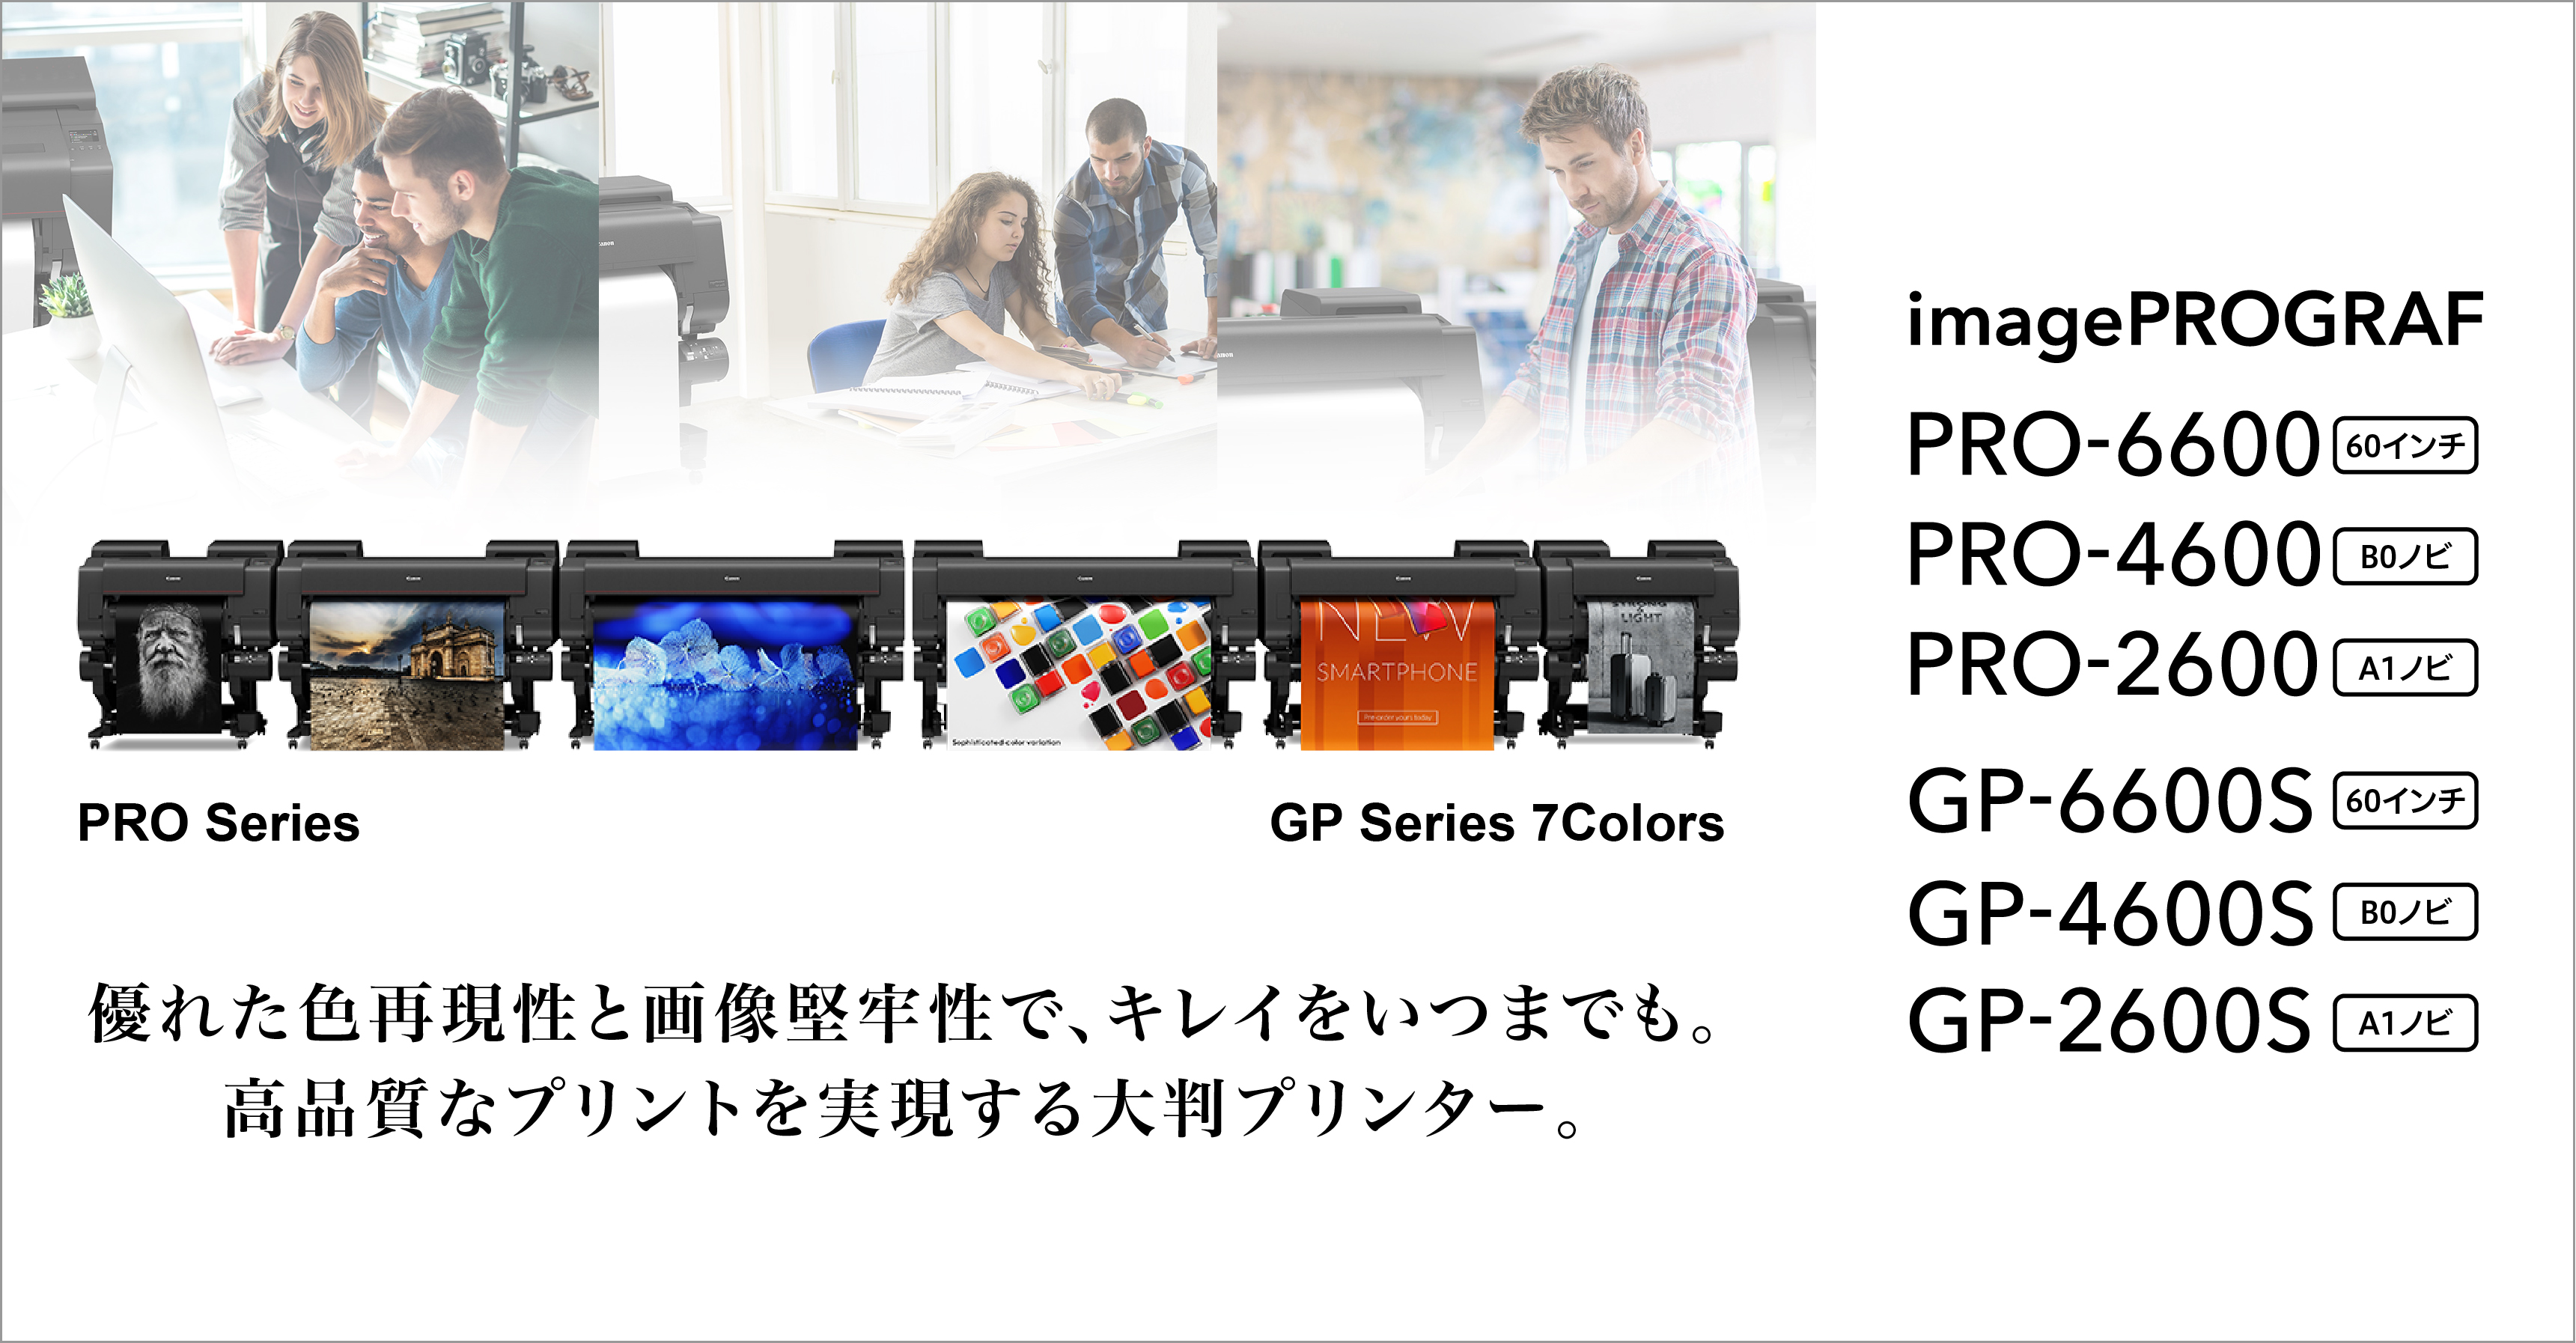 優れた色再現性と画像堅牢性で、キレイをいつまでも。高品質なプリントを実現する大判プリンター。image PROGRAF GP-6600S（60インチ）／GP-4600S（B0ノビ）／GP-2600S（A1ノビ）／PRO-6600（60インチ）／PRO-4600（B0ノビ）／PRO-2600（A1ノビ）